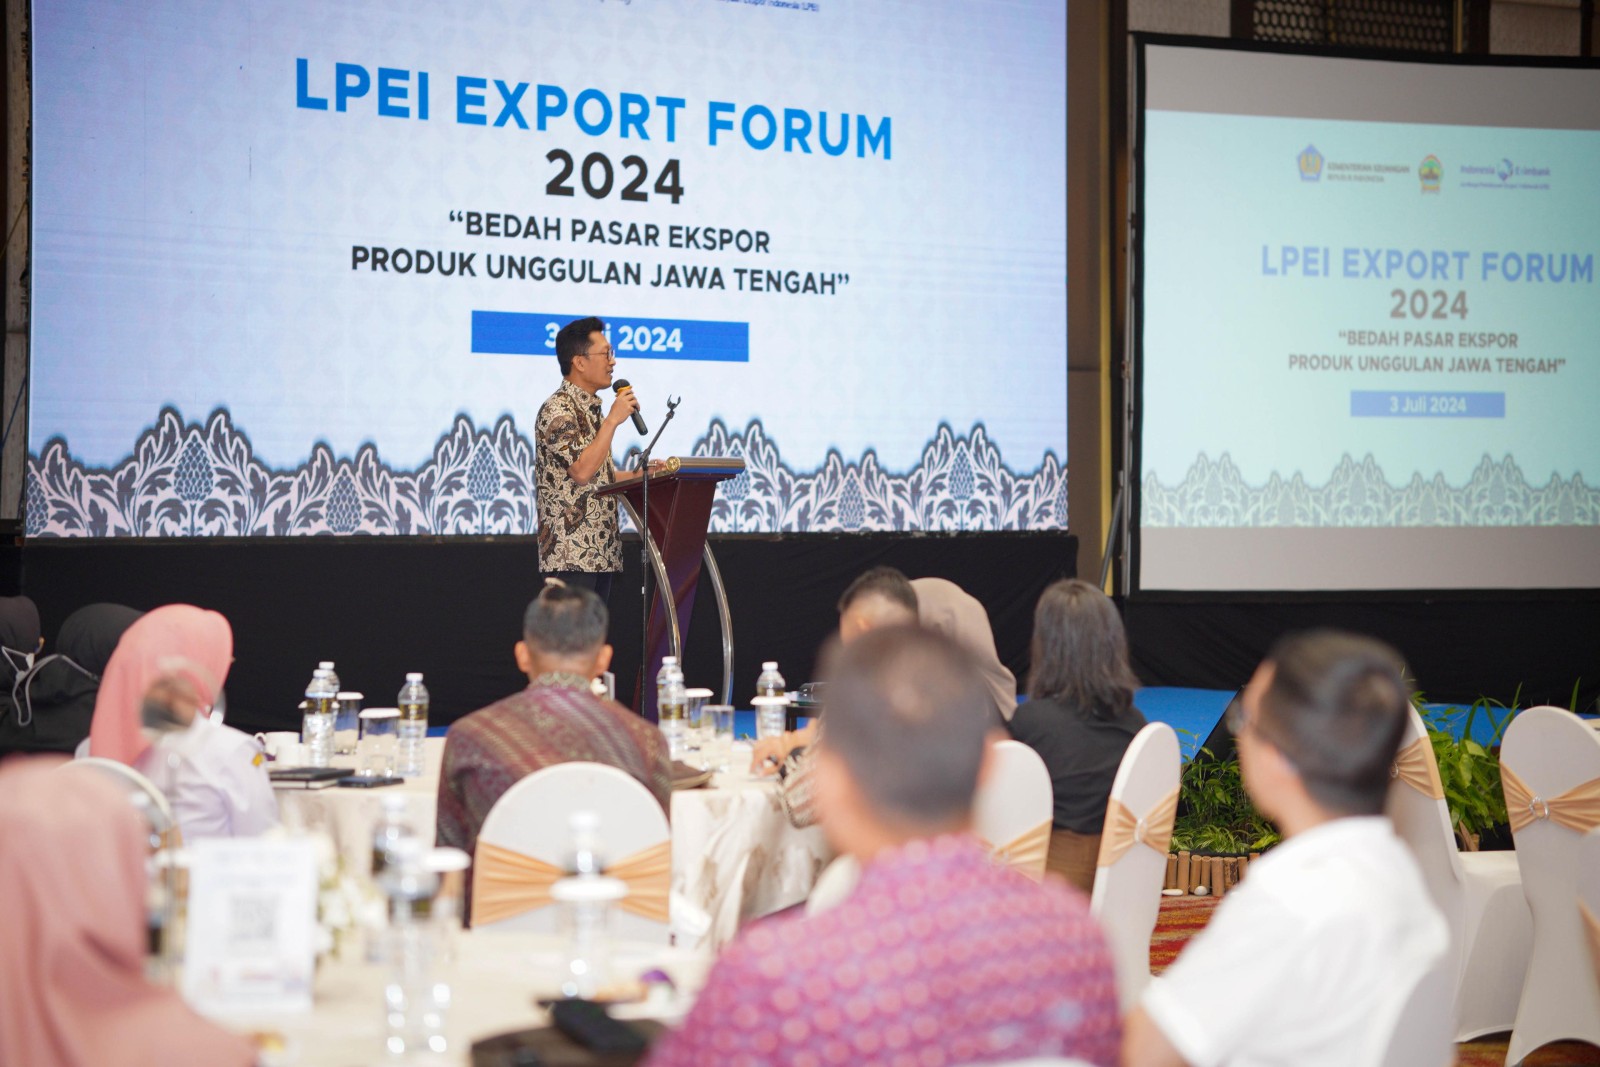 LPEI Dorong UKM Jawa Tengah Tingkatkan Daya Saing Produk Unggulan di Pasar Global